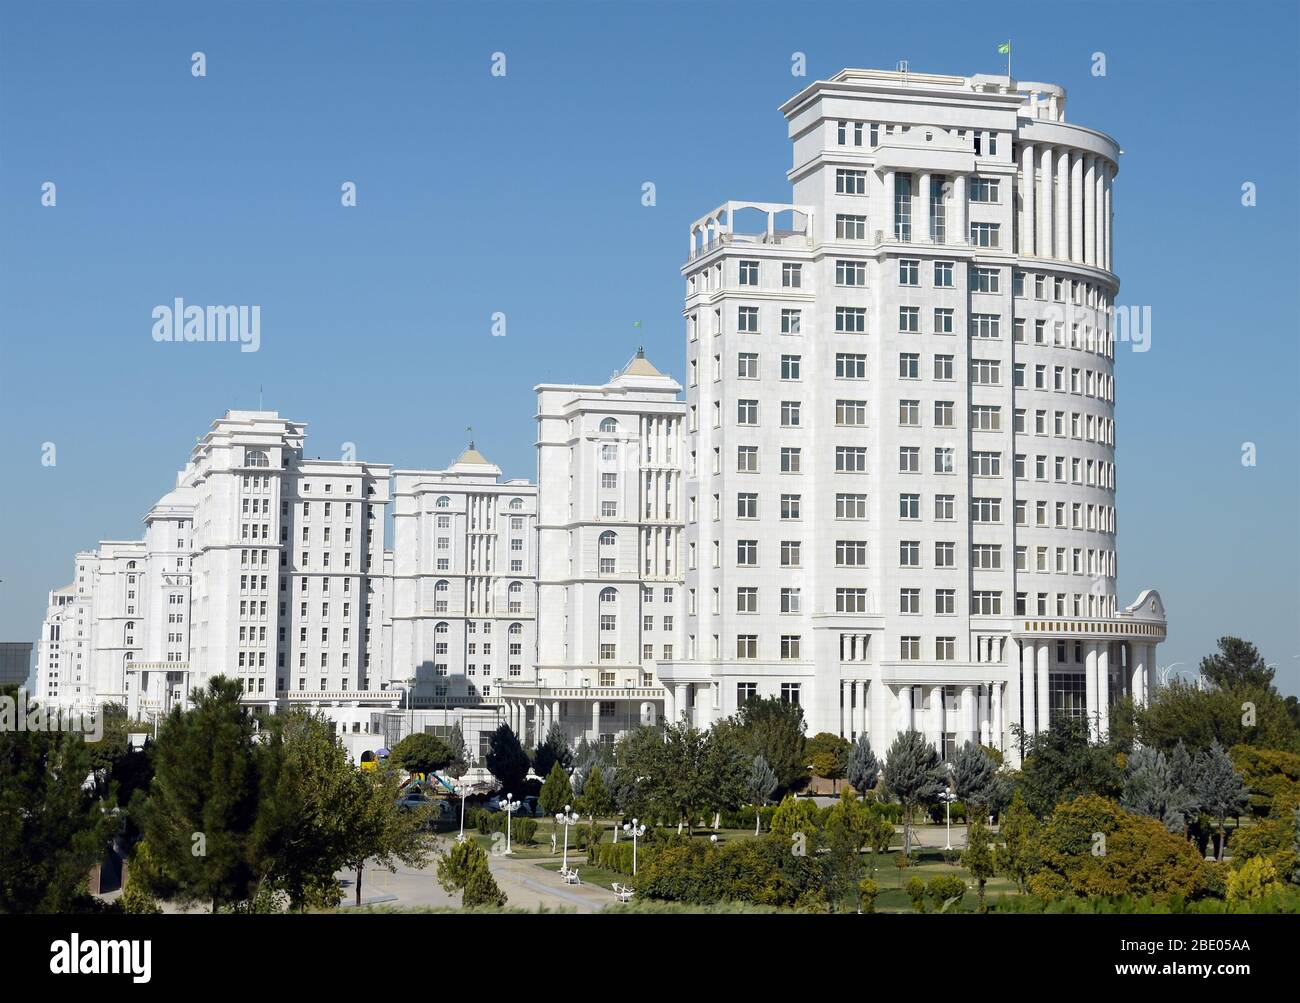 Mehrere luxuriöse Wohngebäude mit weißem Marmor in Aschgabat, Turkmenistan in Zentralasien. Leere weiße Marmorgebäude. Stockfoto